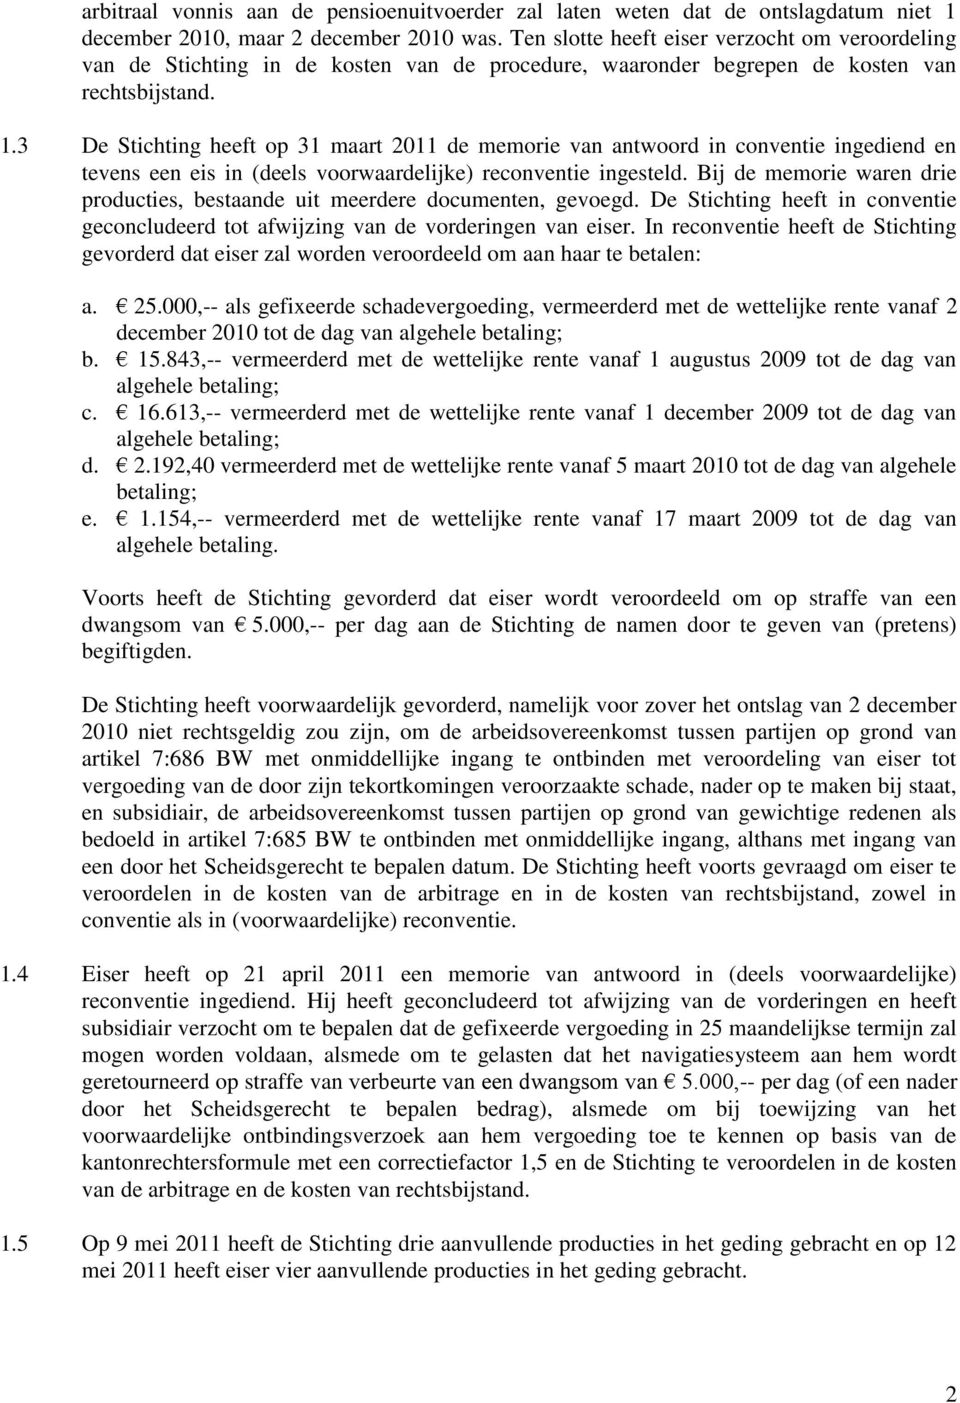 3 De Stichting heeft op 31 maart 2011 de memorie van antwoord in conventie ingediend en tevens een eis in (deels voorwaardelijke) reconventie ingesteld.